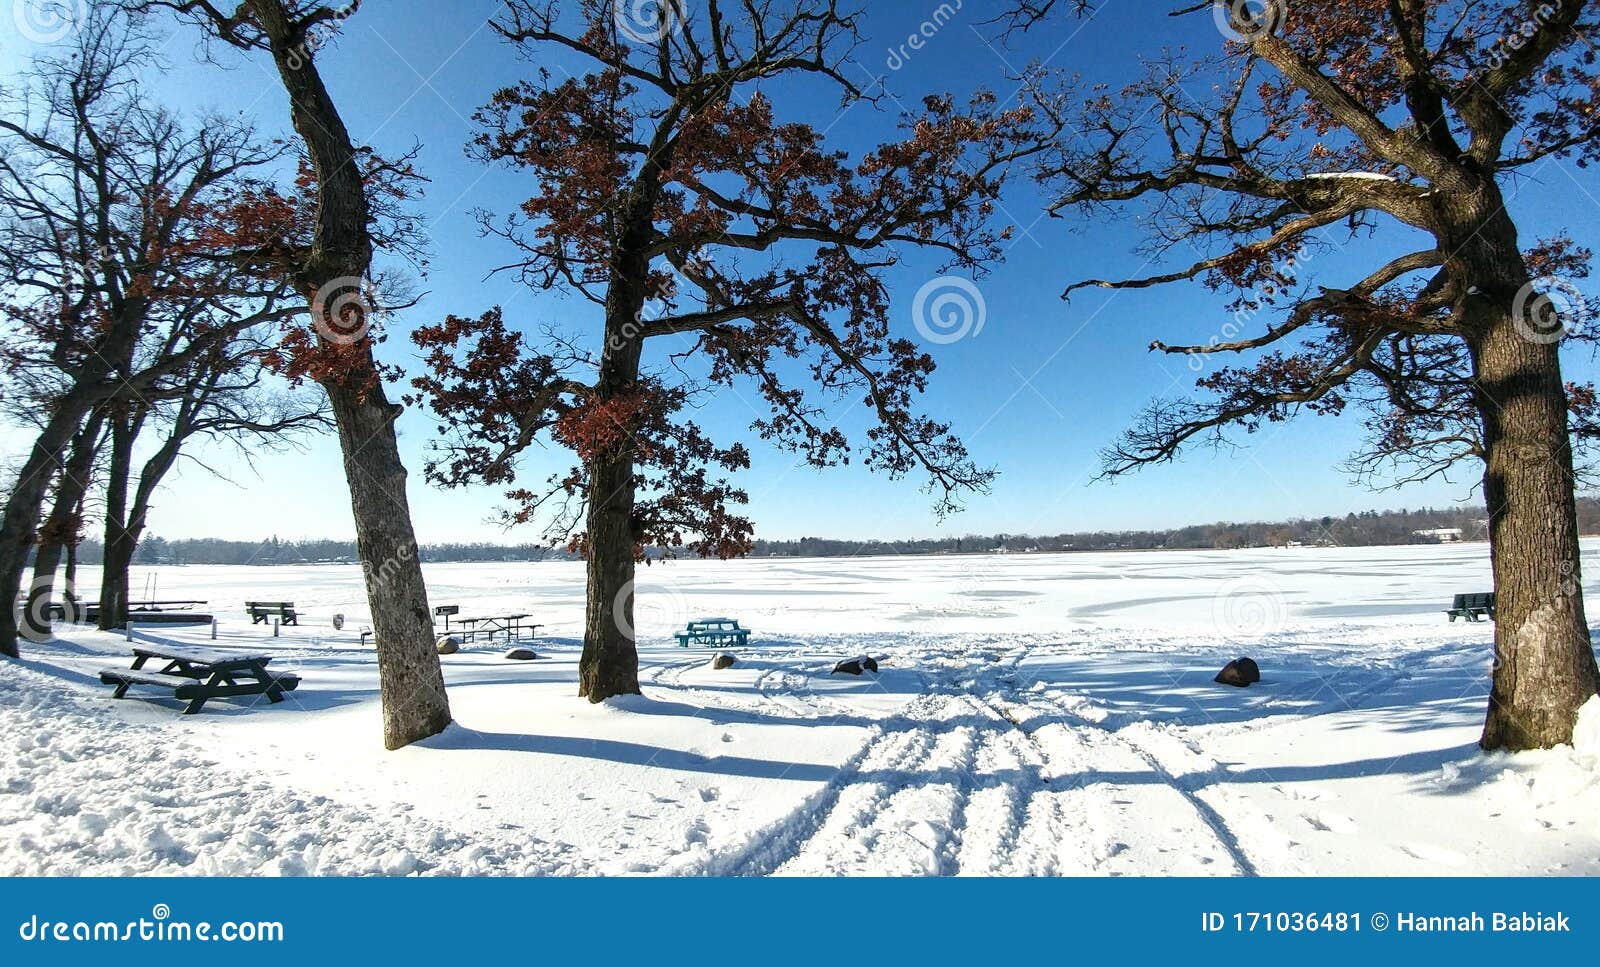 tire tracks in snow, oak trees, pell lake, wisconsin